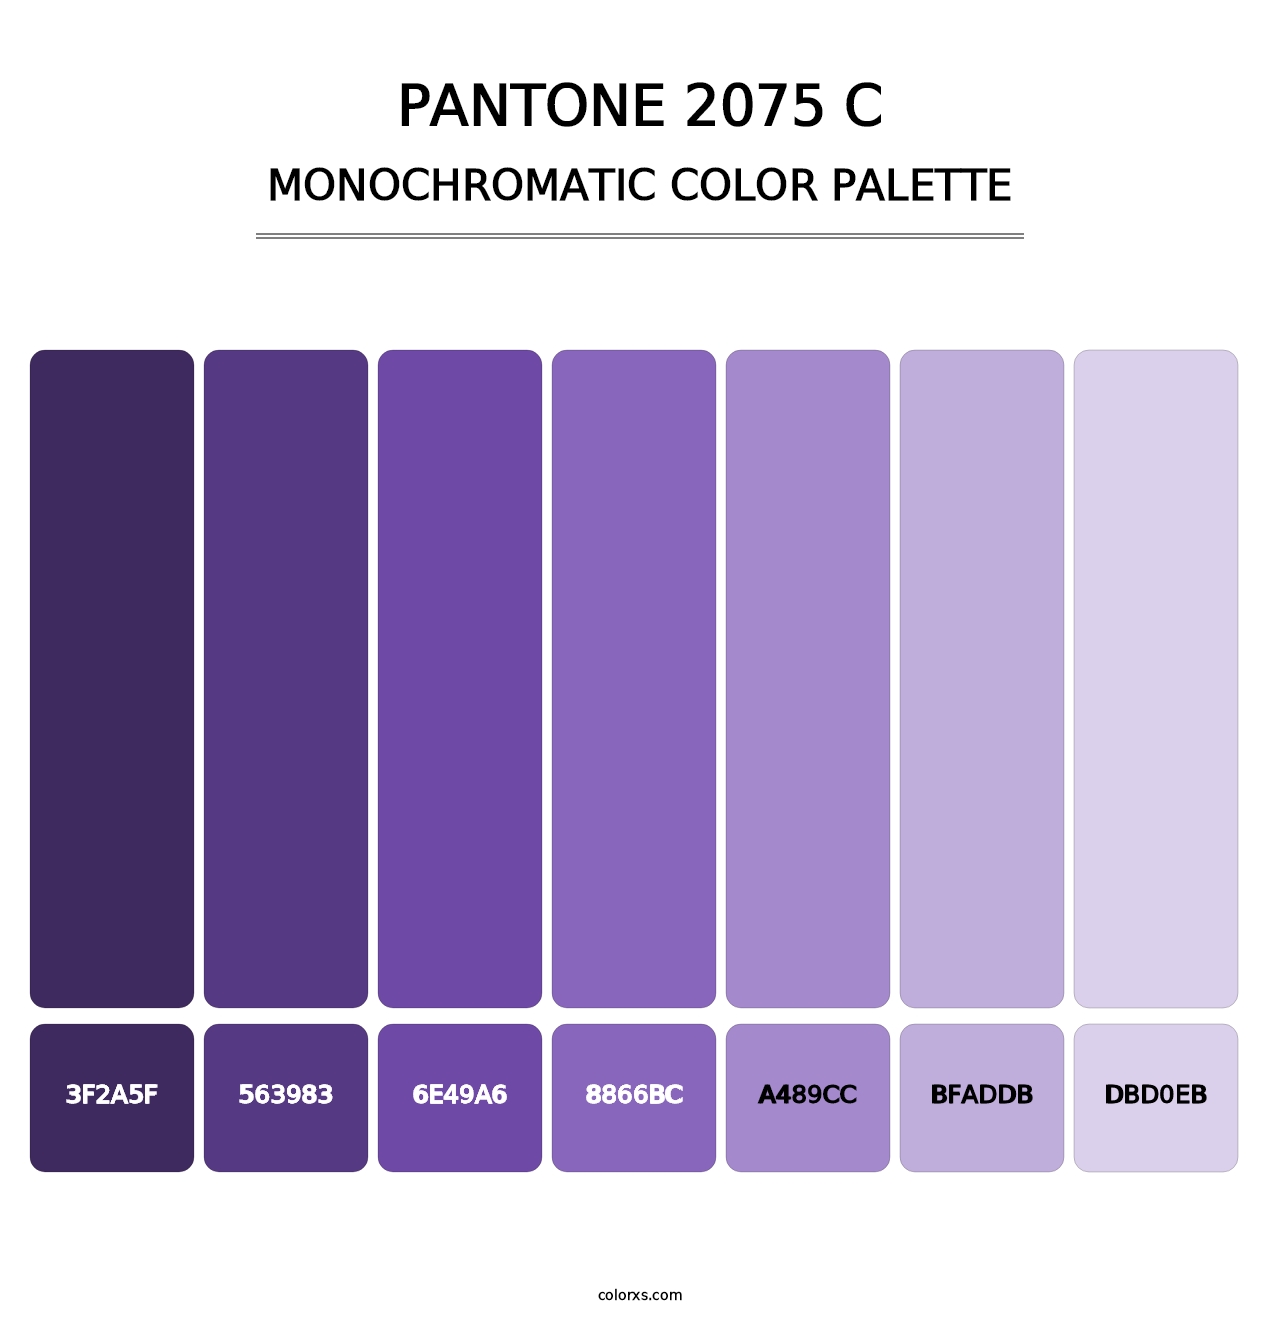 PANTONE 2075 C - Monochromatic Color Palette